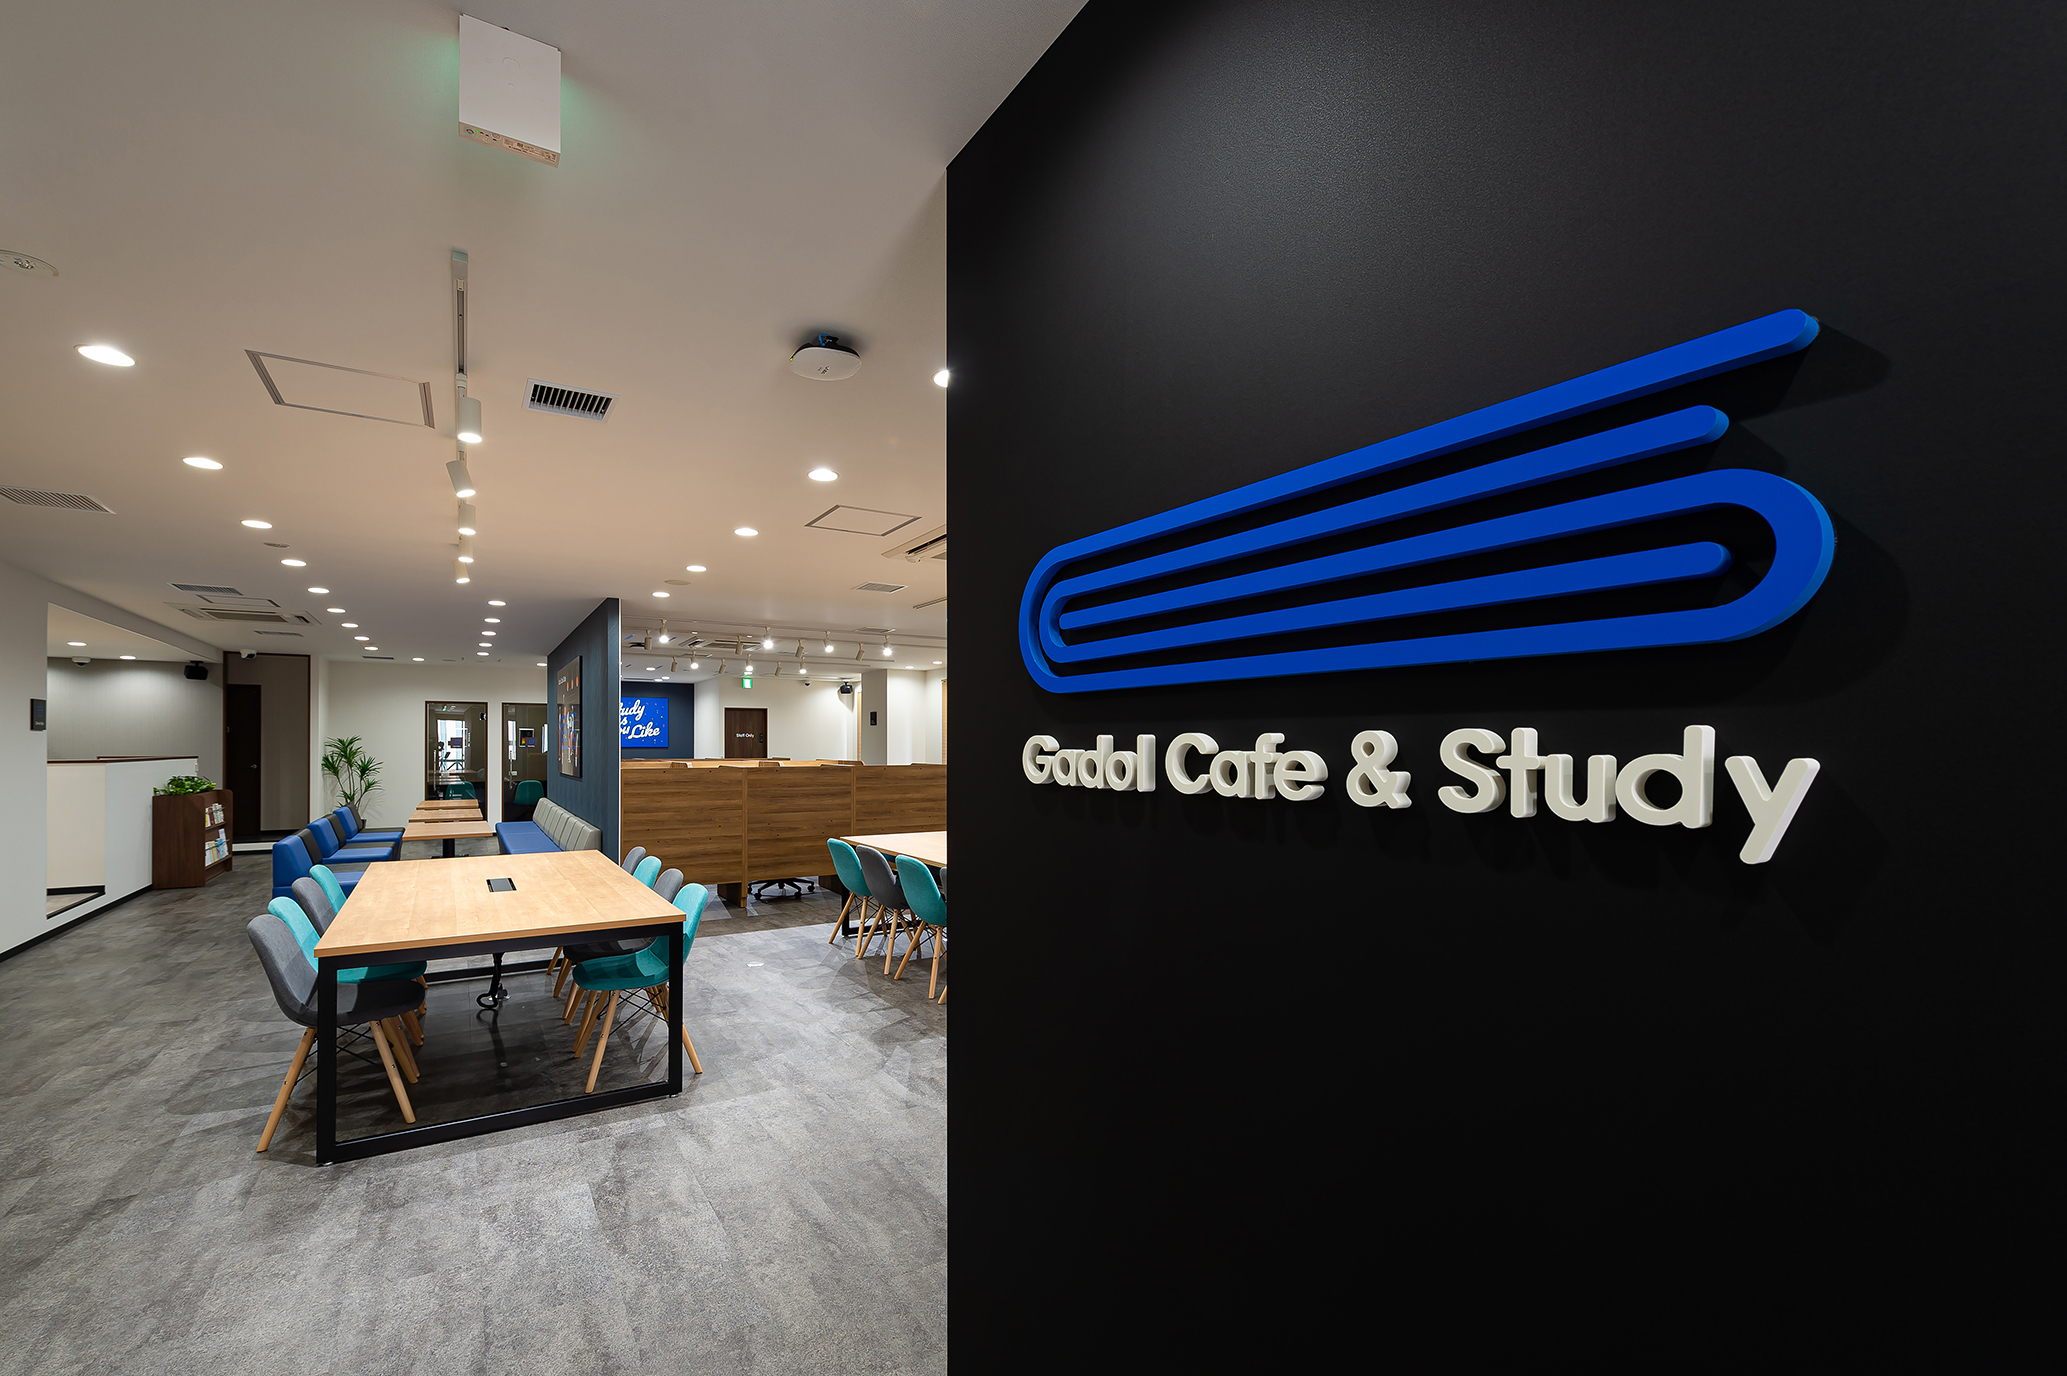 カフェ感覚で気軽に利用できるコワーキングスペース Gadol Cafe Study 1号店 が 神戸三宮 国際会館 南側ビルに21年7月16日 金 オープン Gadol株式会社のプレスリリース